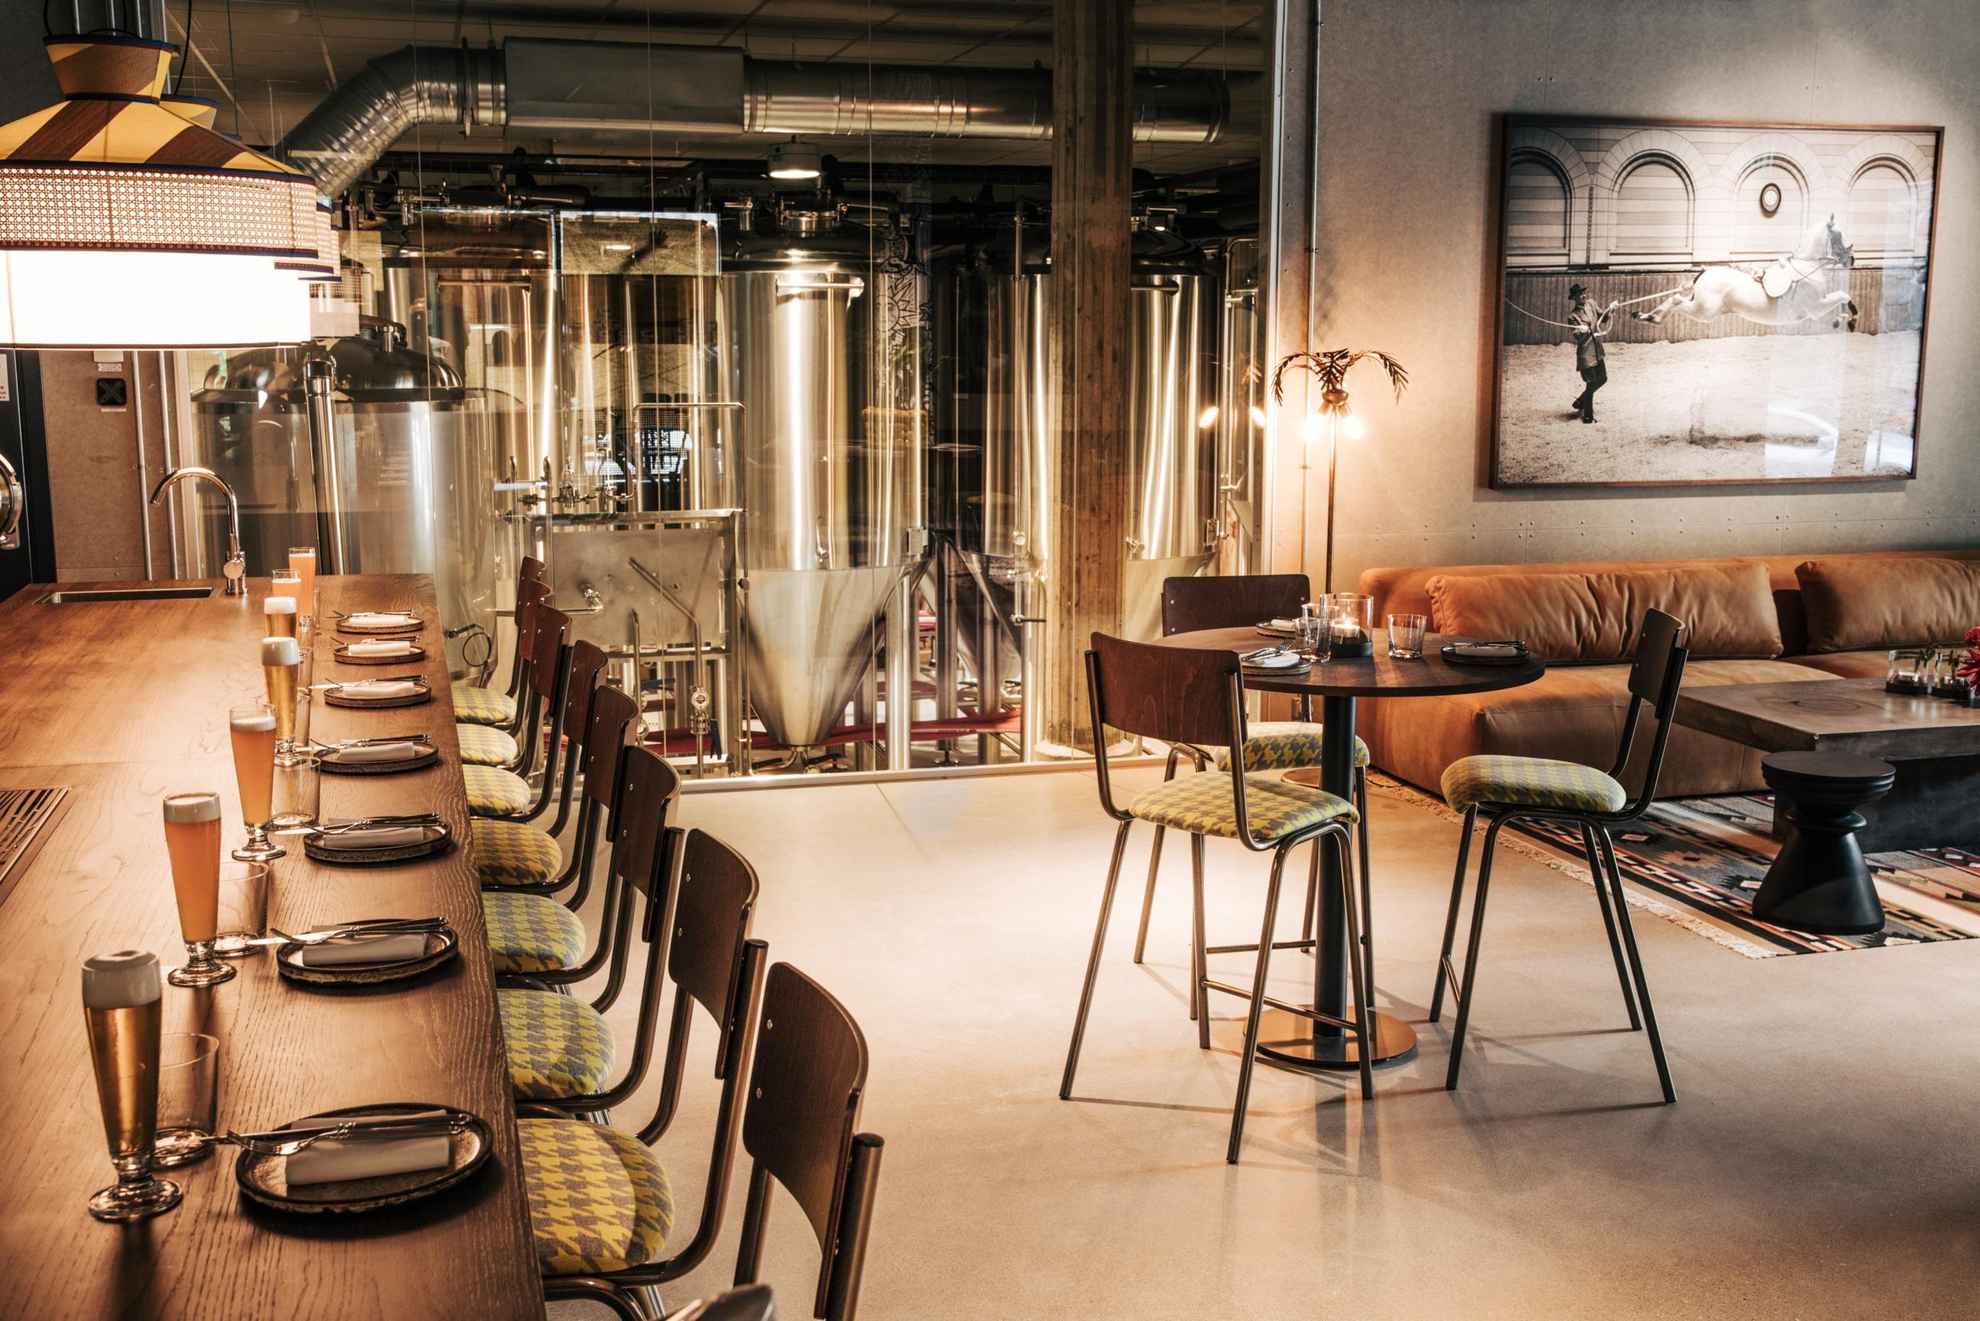 Im Inneren eines Restaurants ist die Theke auf der linken Seite mit Biergläsern bestückt, auf der rechten Seite steht ein gedeckter Tisch mit drei Stühlen und einem Sofa. Im Hintergrund kann man hinter einer Glaswand eine Brauerei sehen.